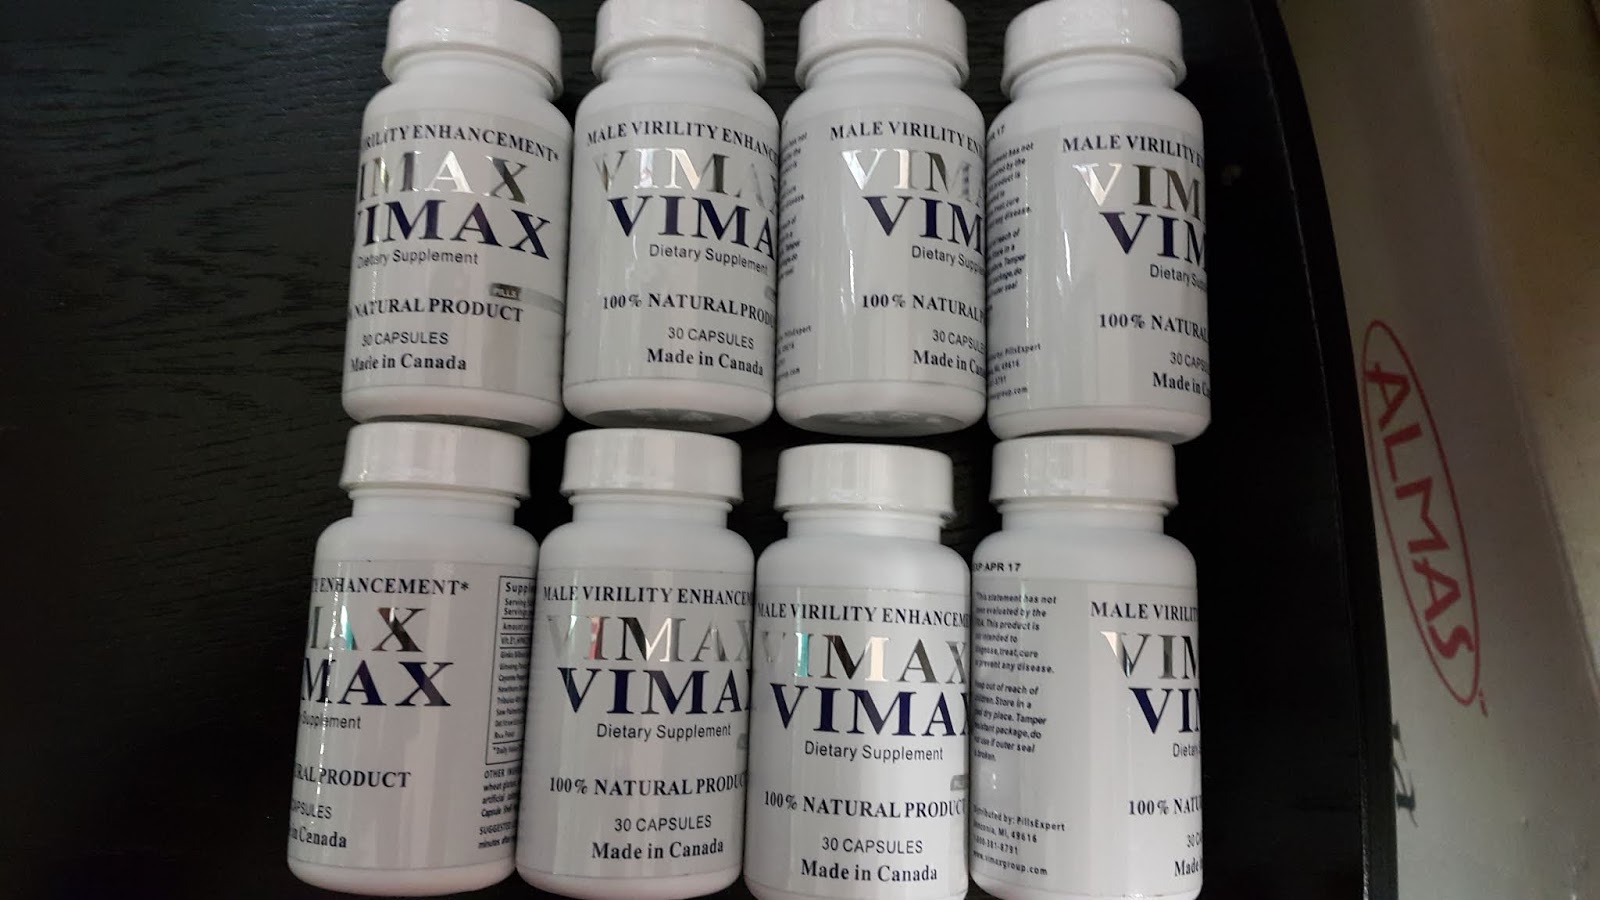 Kedai ubat kuat lelaki: STOKIS DAN PENGEDAR VIMAX ORIGINAL 